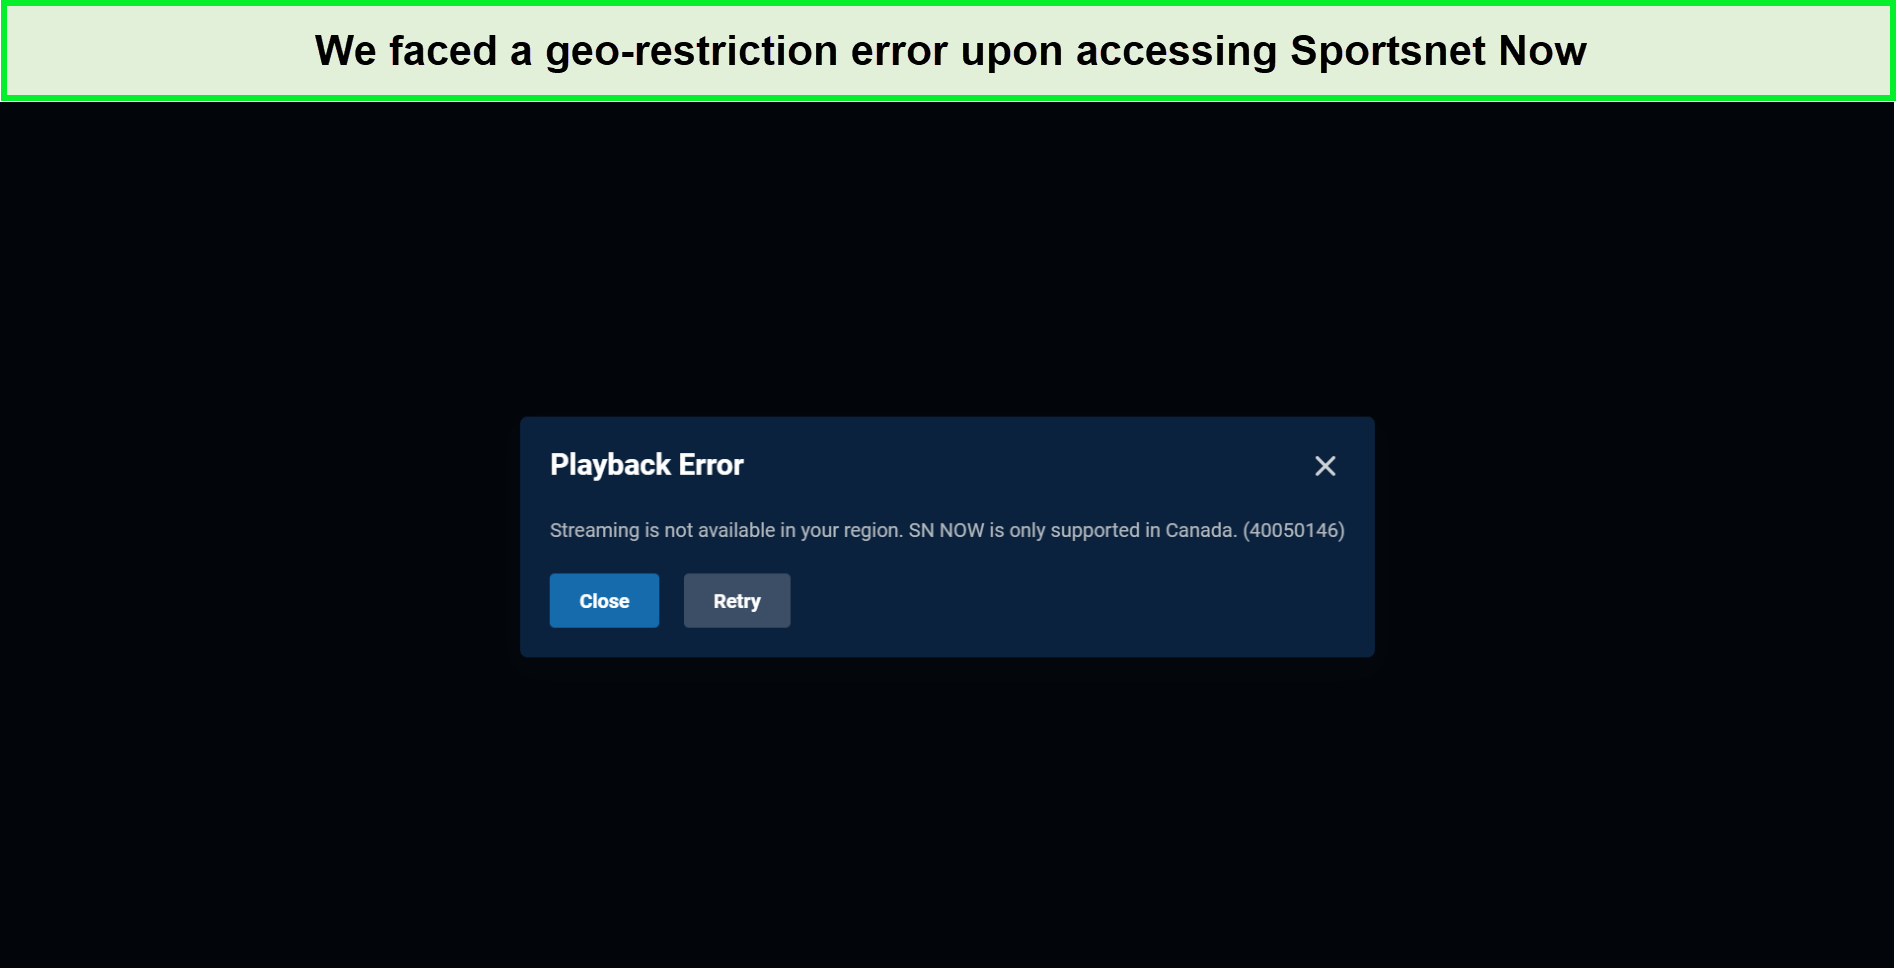 sportsnet-now-in-USA-geo-restriction-error